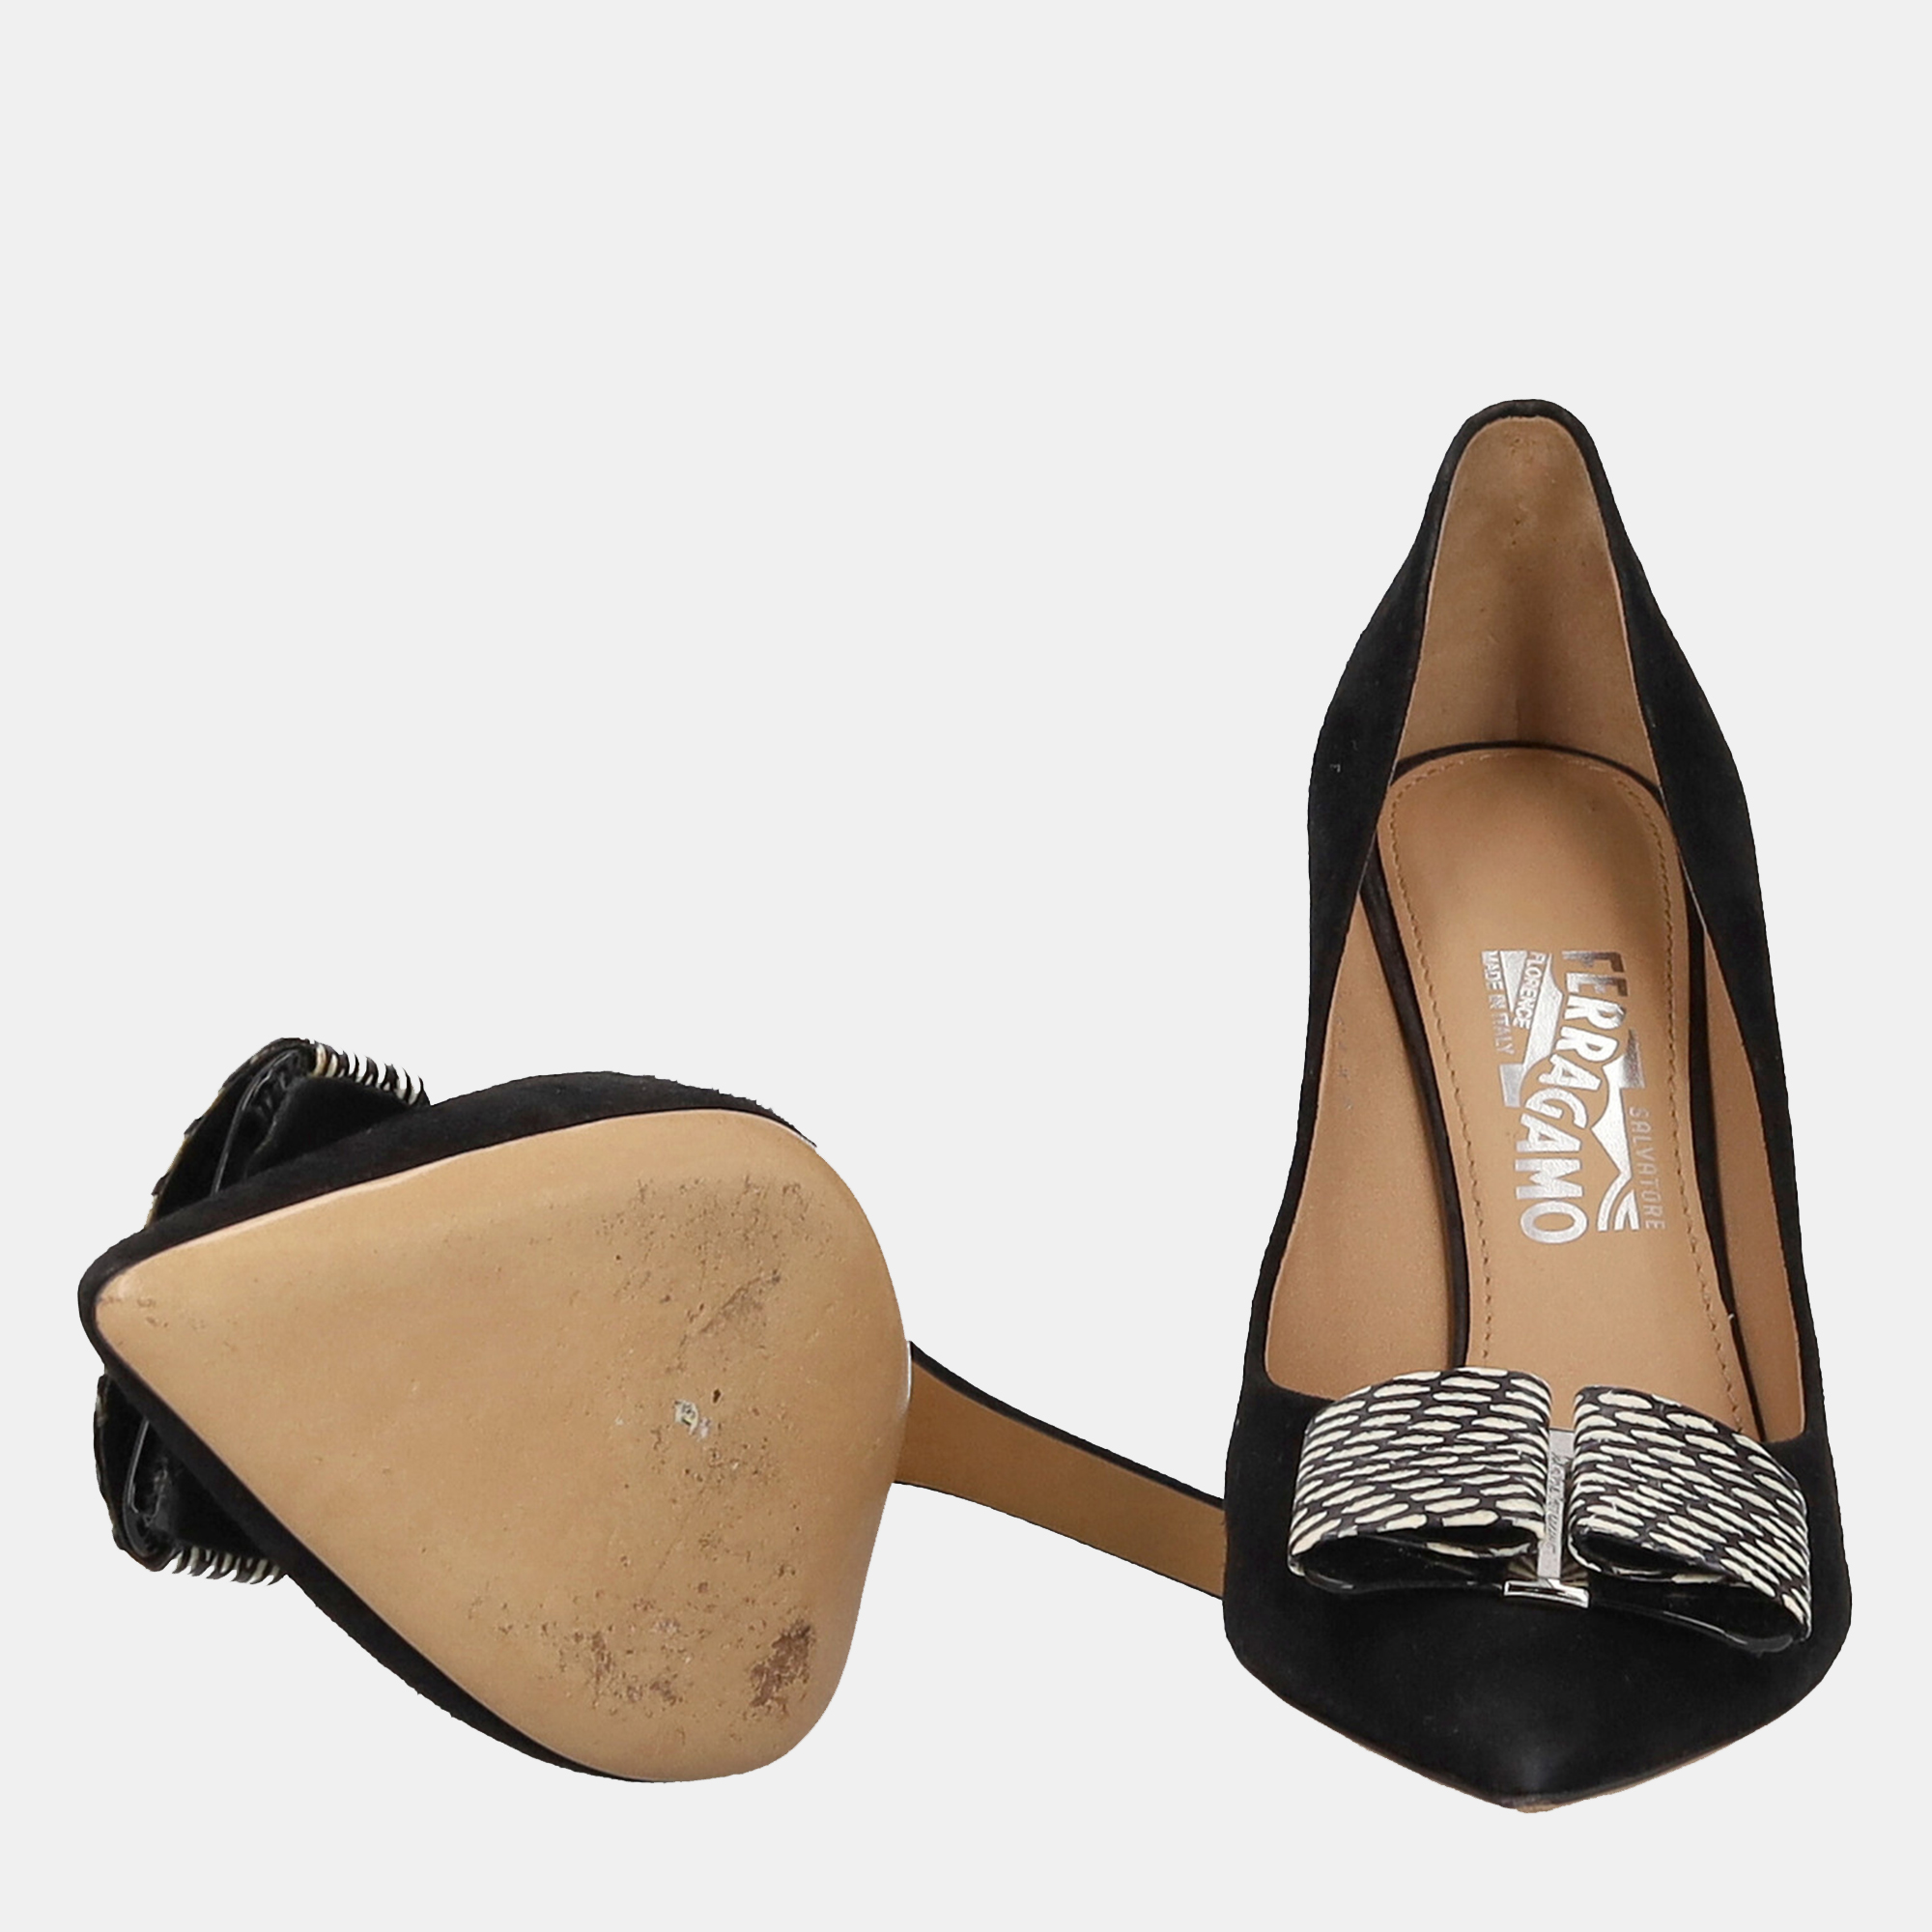 Salvatore Ferragamo  Women's Leather Heels - Black - EU 40.5